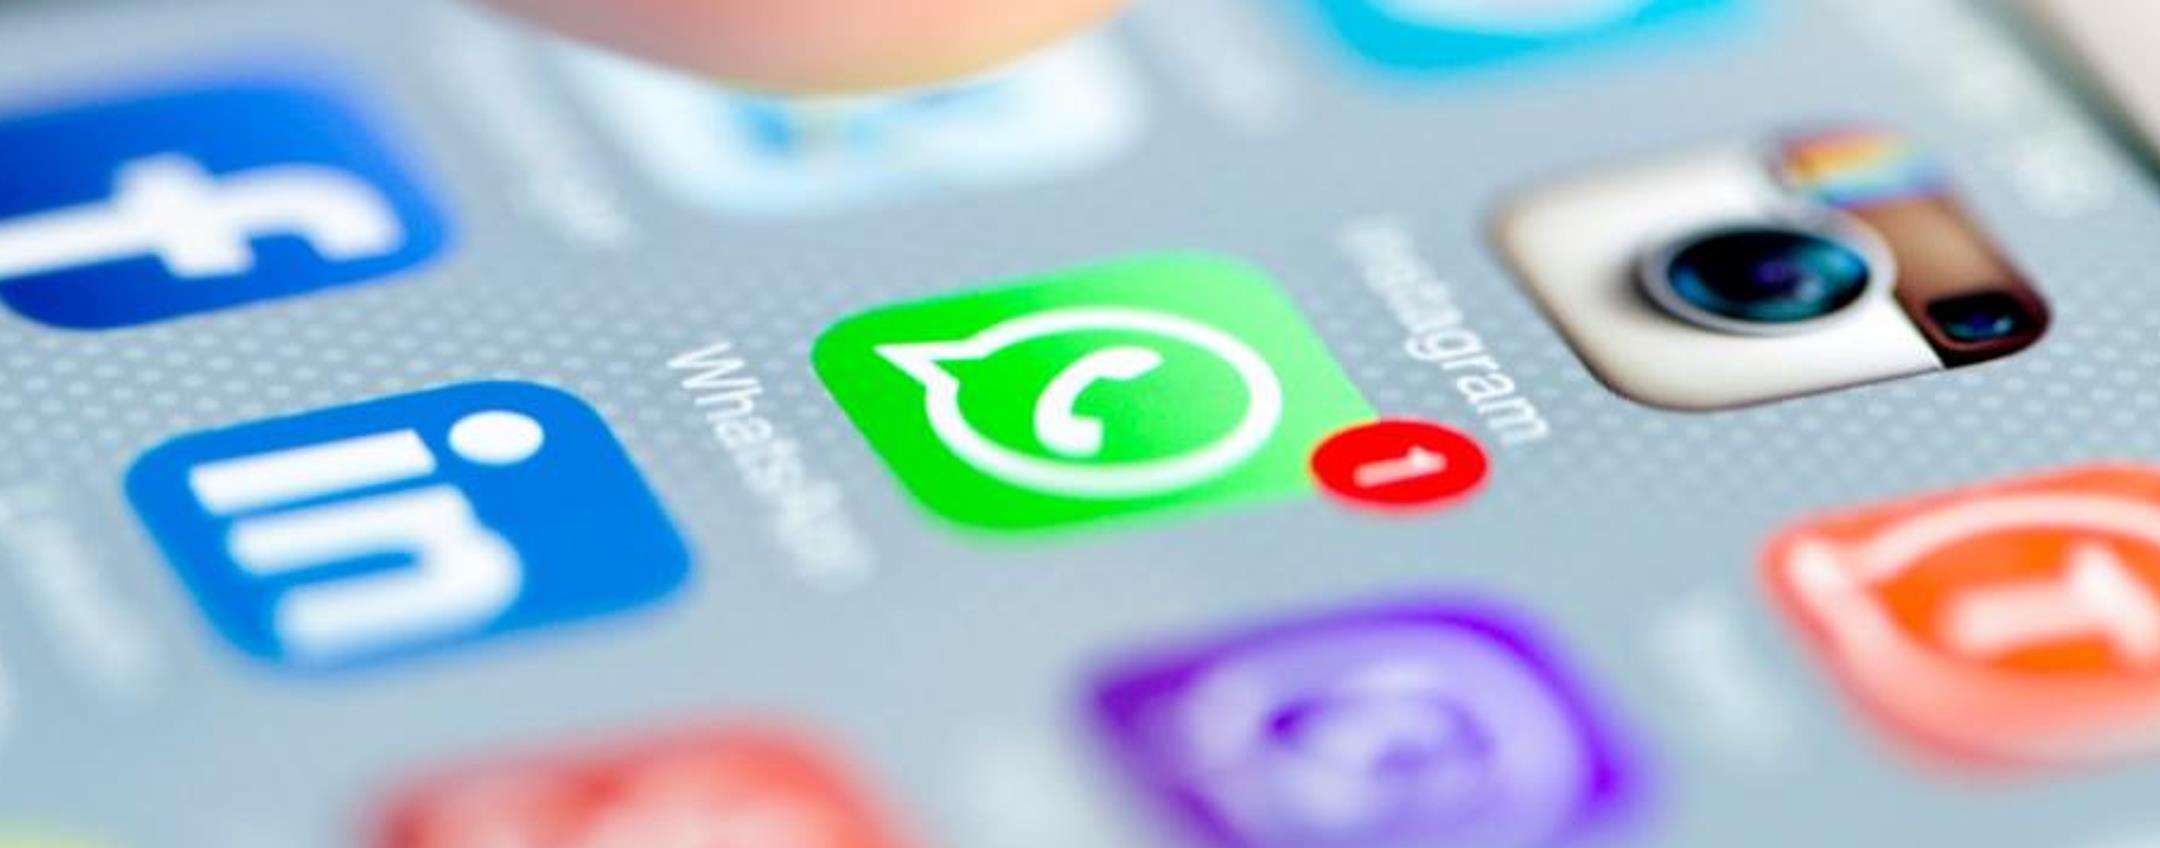 WhatsApp: in arrivo un SUPER POTERE per salvare i messaggi effimeri